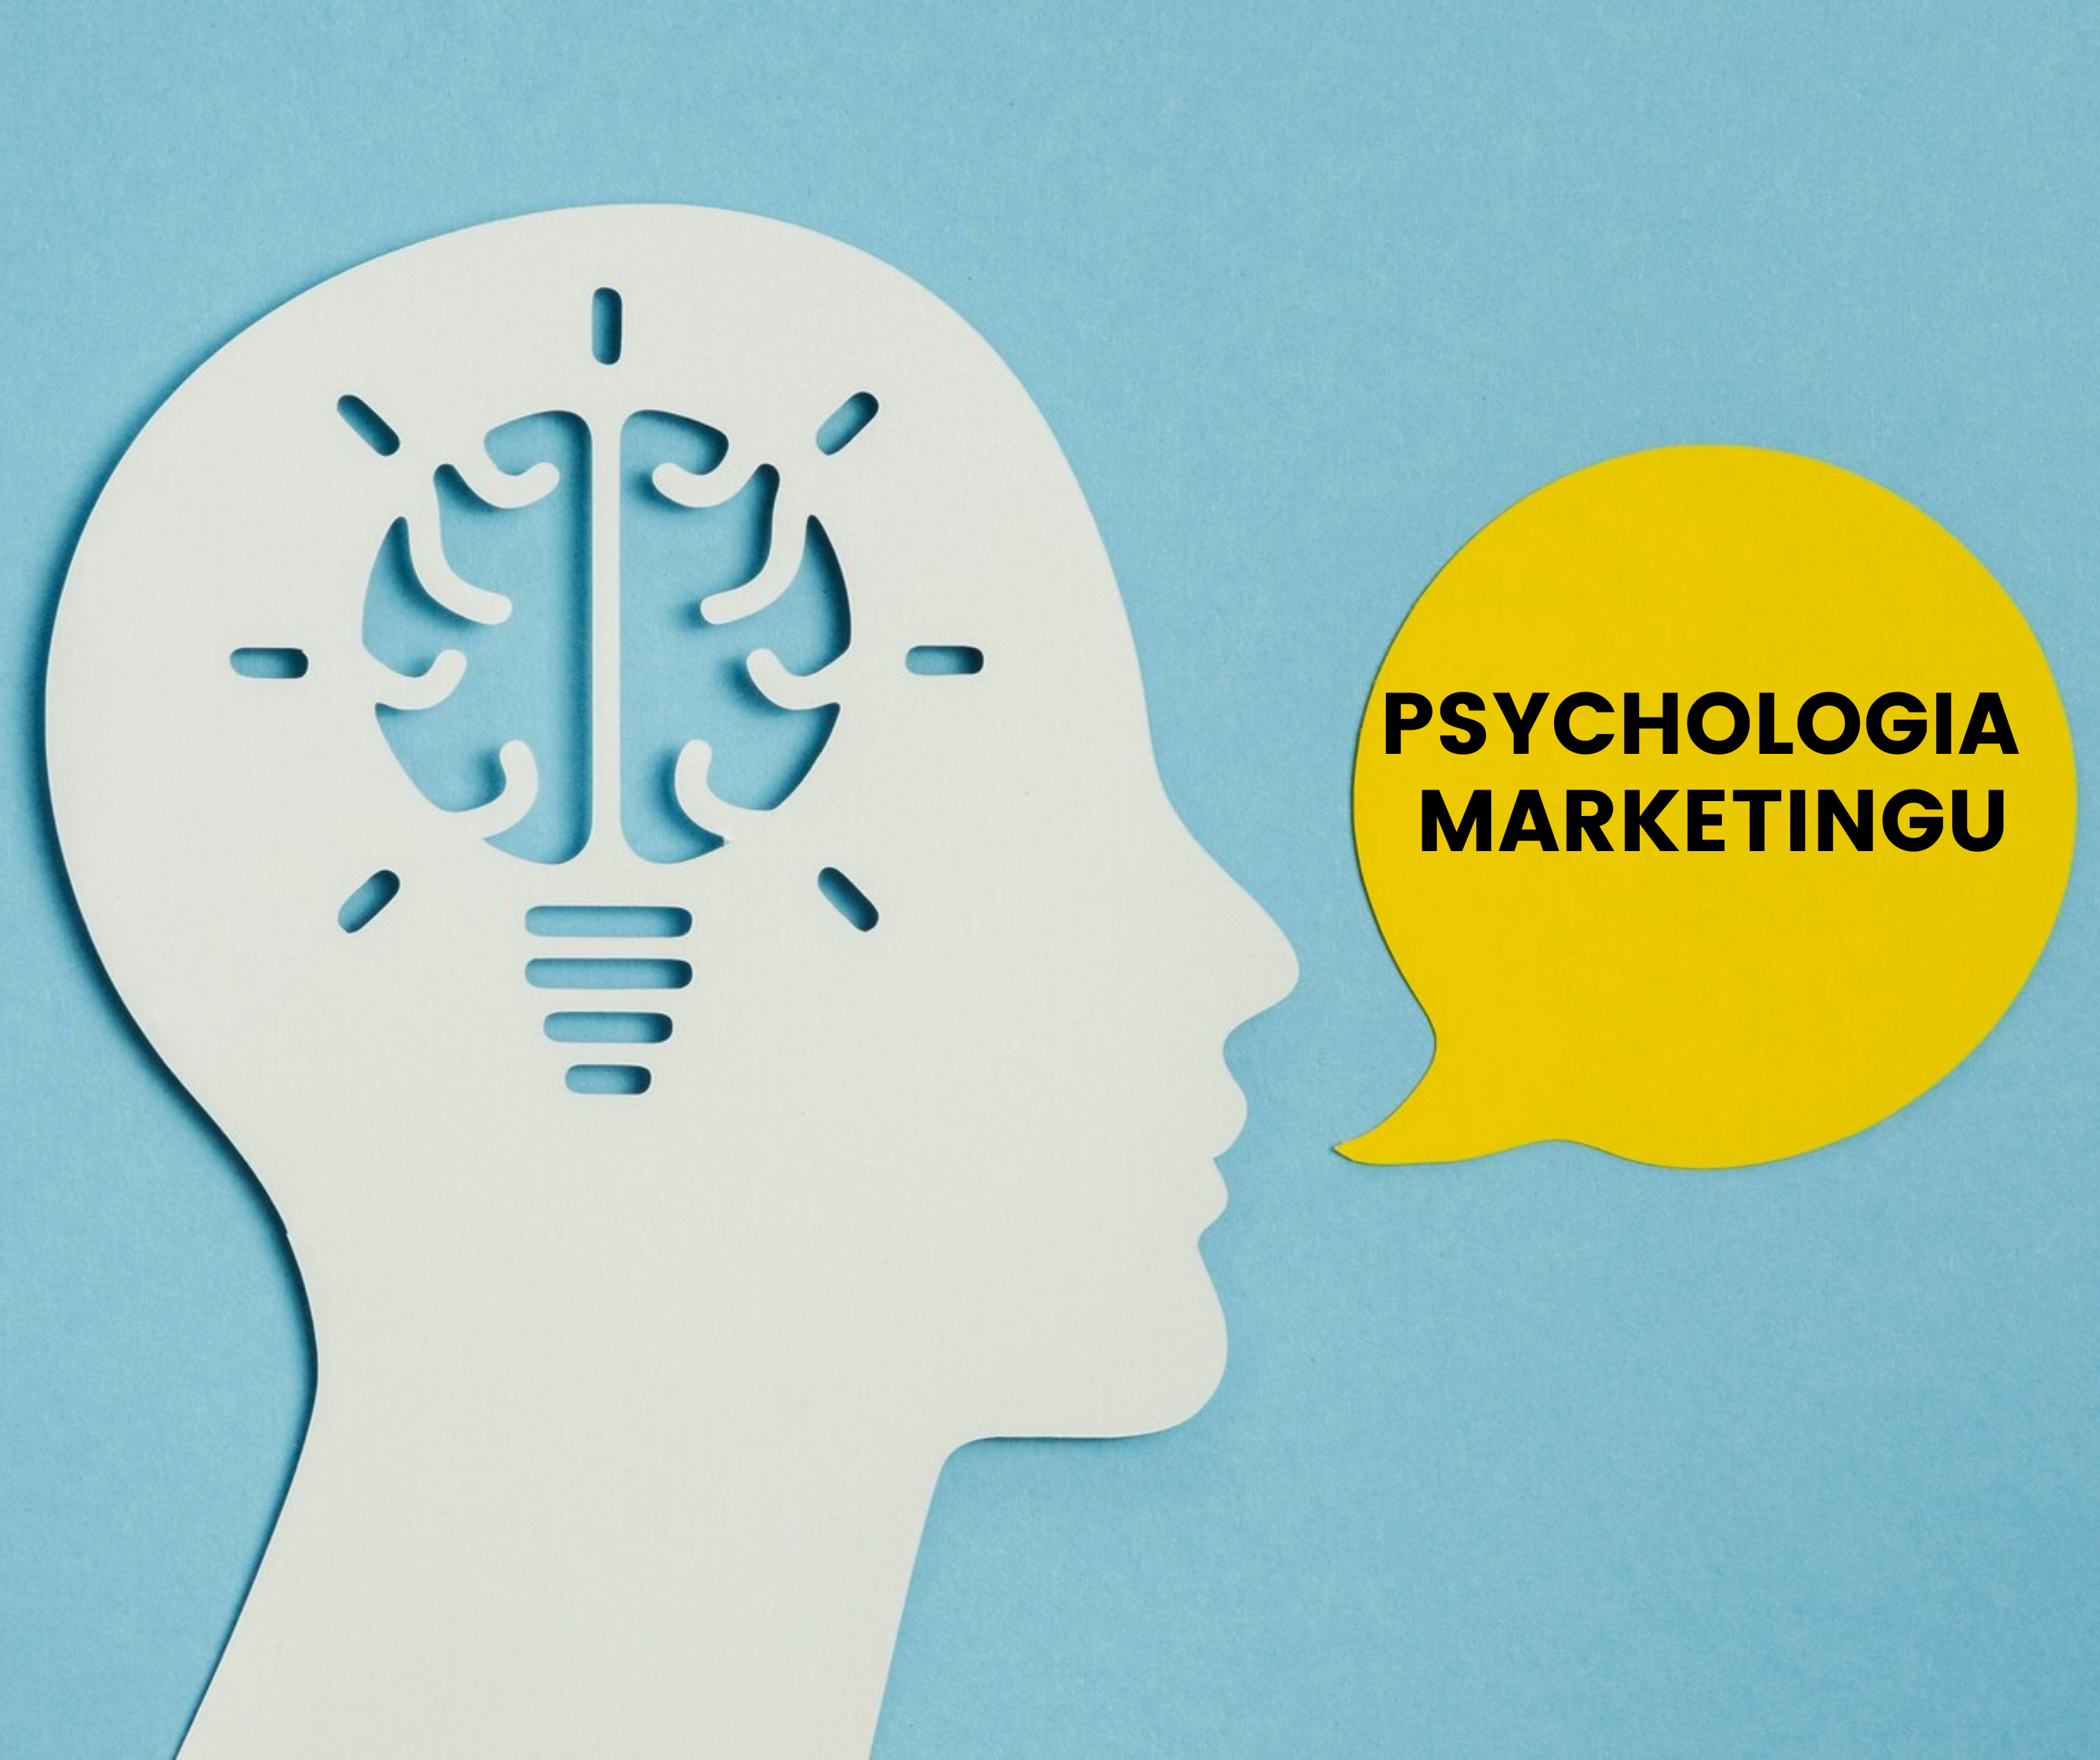 Psychologia Marketingu: Odkrywanie Tajemnic Ludzkiego Umysłu w Kampaniach